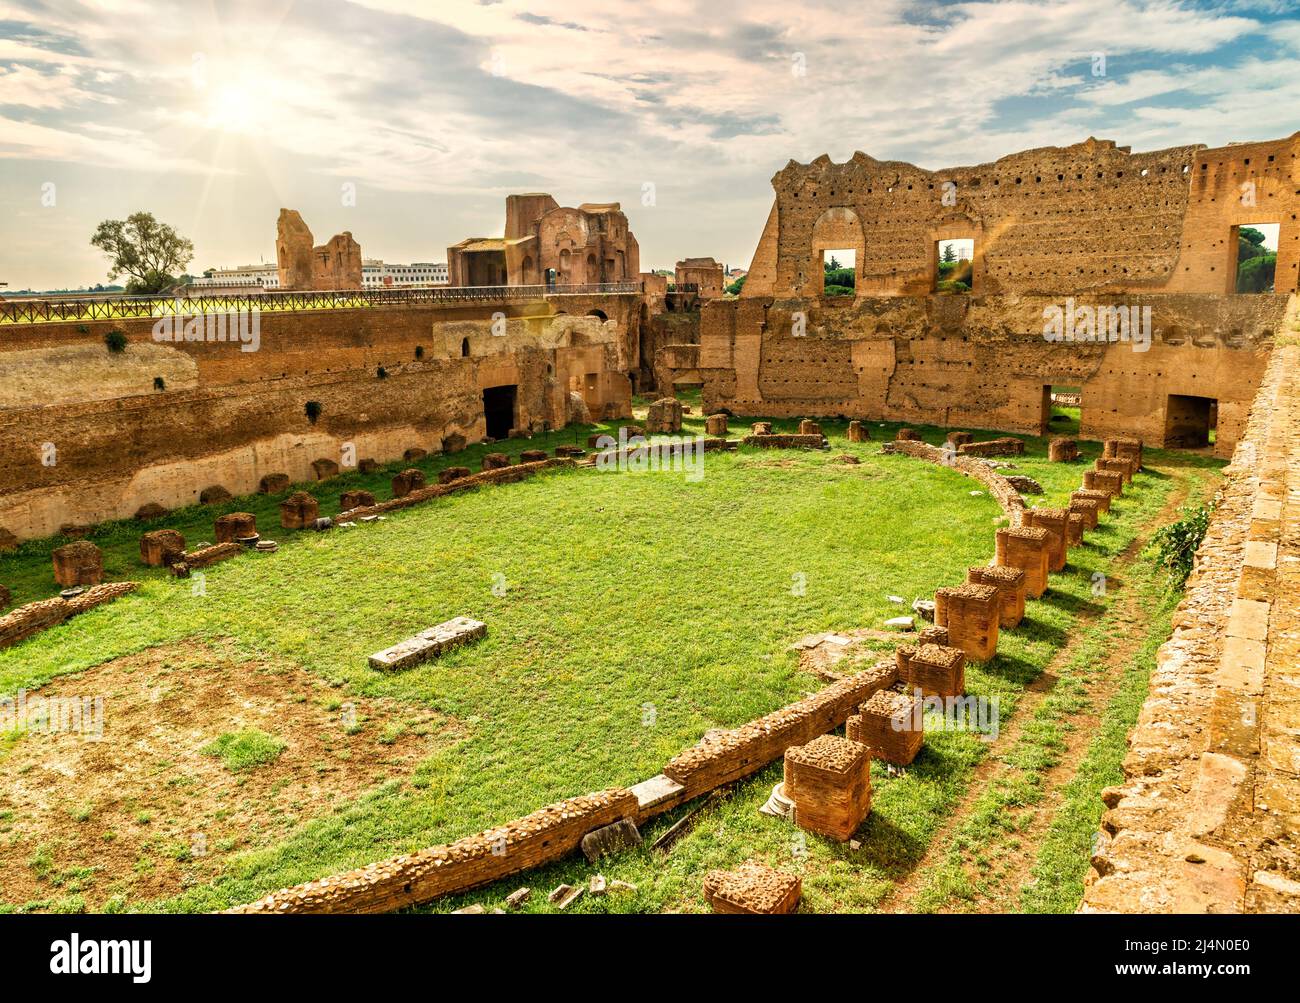 Stadion von Domitian auf dem Palatin im Sonnenlicht, Rom, Italien. Es ist ein berühmtes Wahrzeichen Roms. Alte römische Ruinen auf Palatin und Sonne in Roma Stadt Stockfoto